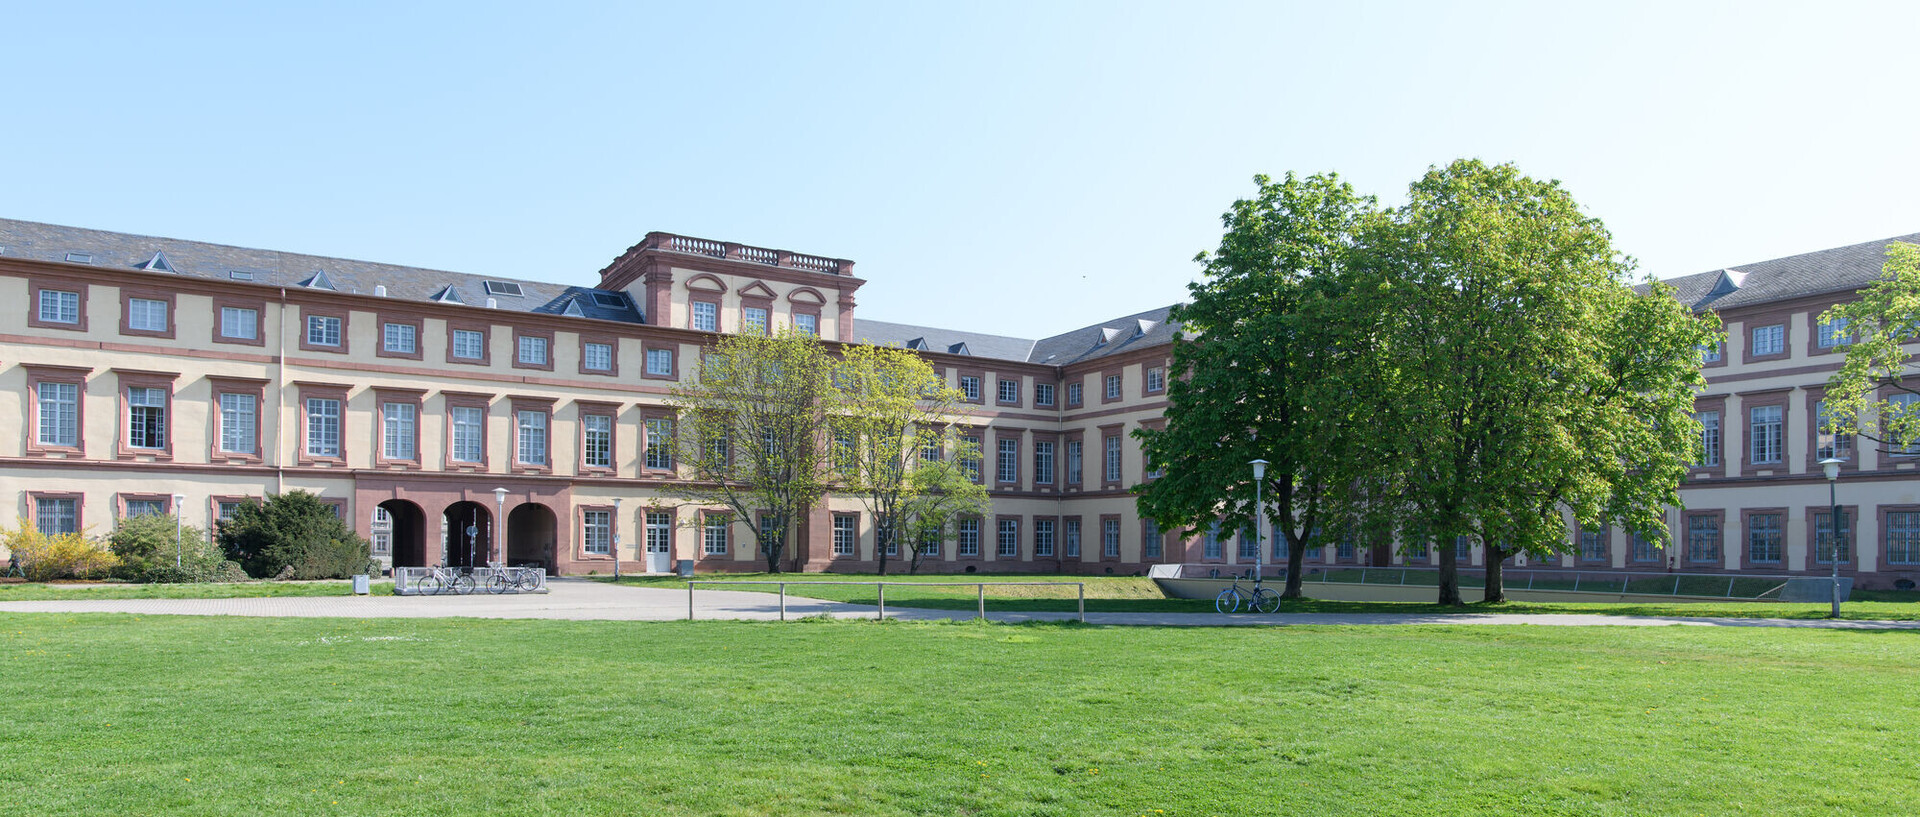 Westflügel des Schlosses der Uni Mannheim mit grünem Rasen. Link: QS-Ranking